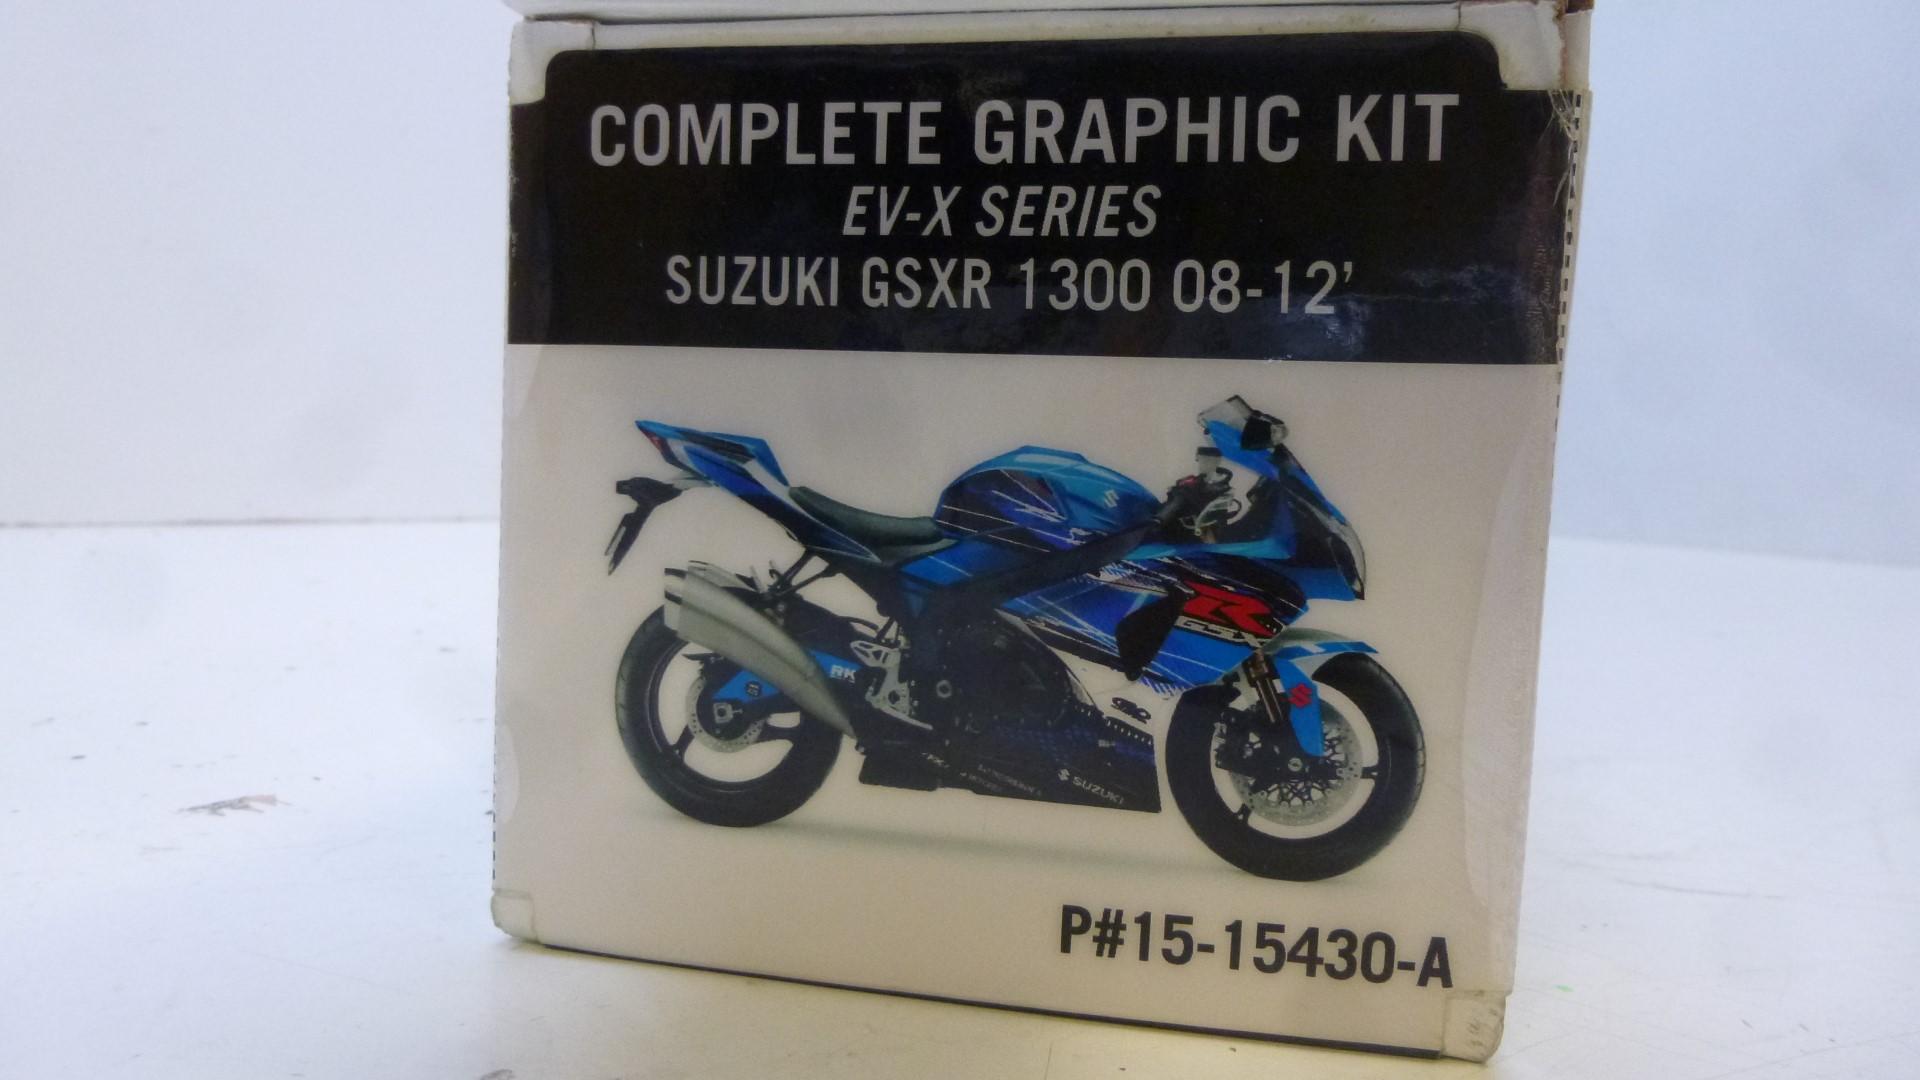 Dekorsatz Aufkleber Sticker Verkleidung graphic kit für Suzuki Gsxr 1300 08-12 1